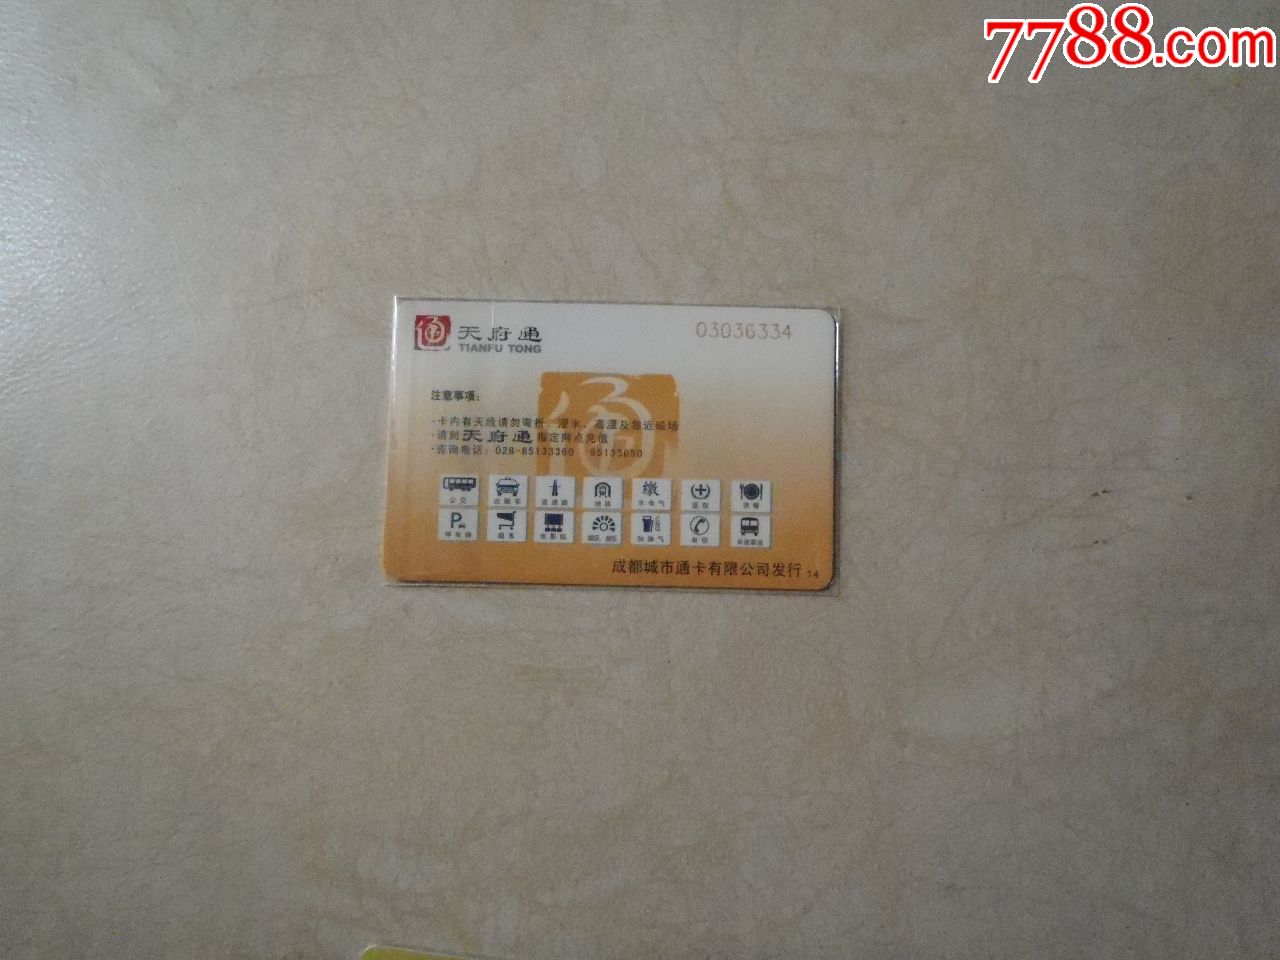 成都天府通公交卡:德阳银行兔年卡